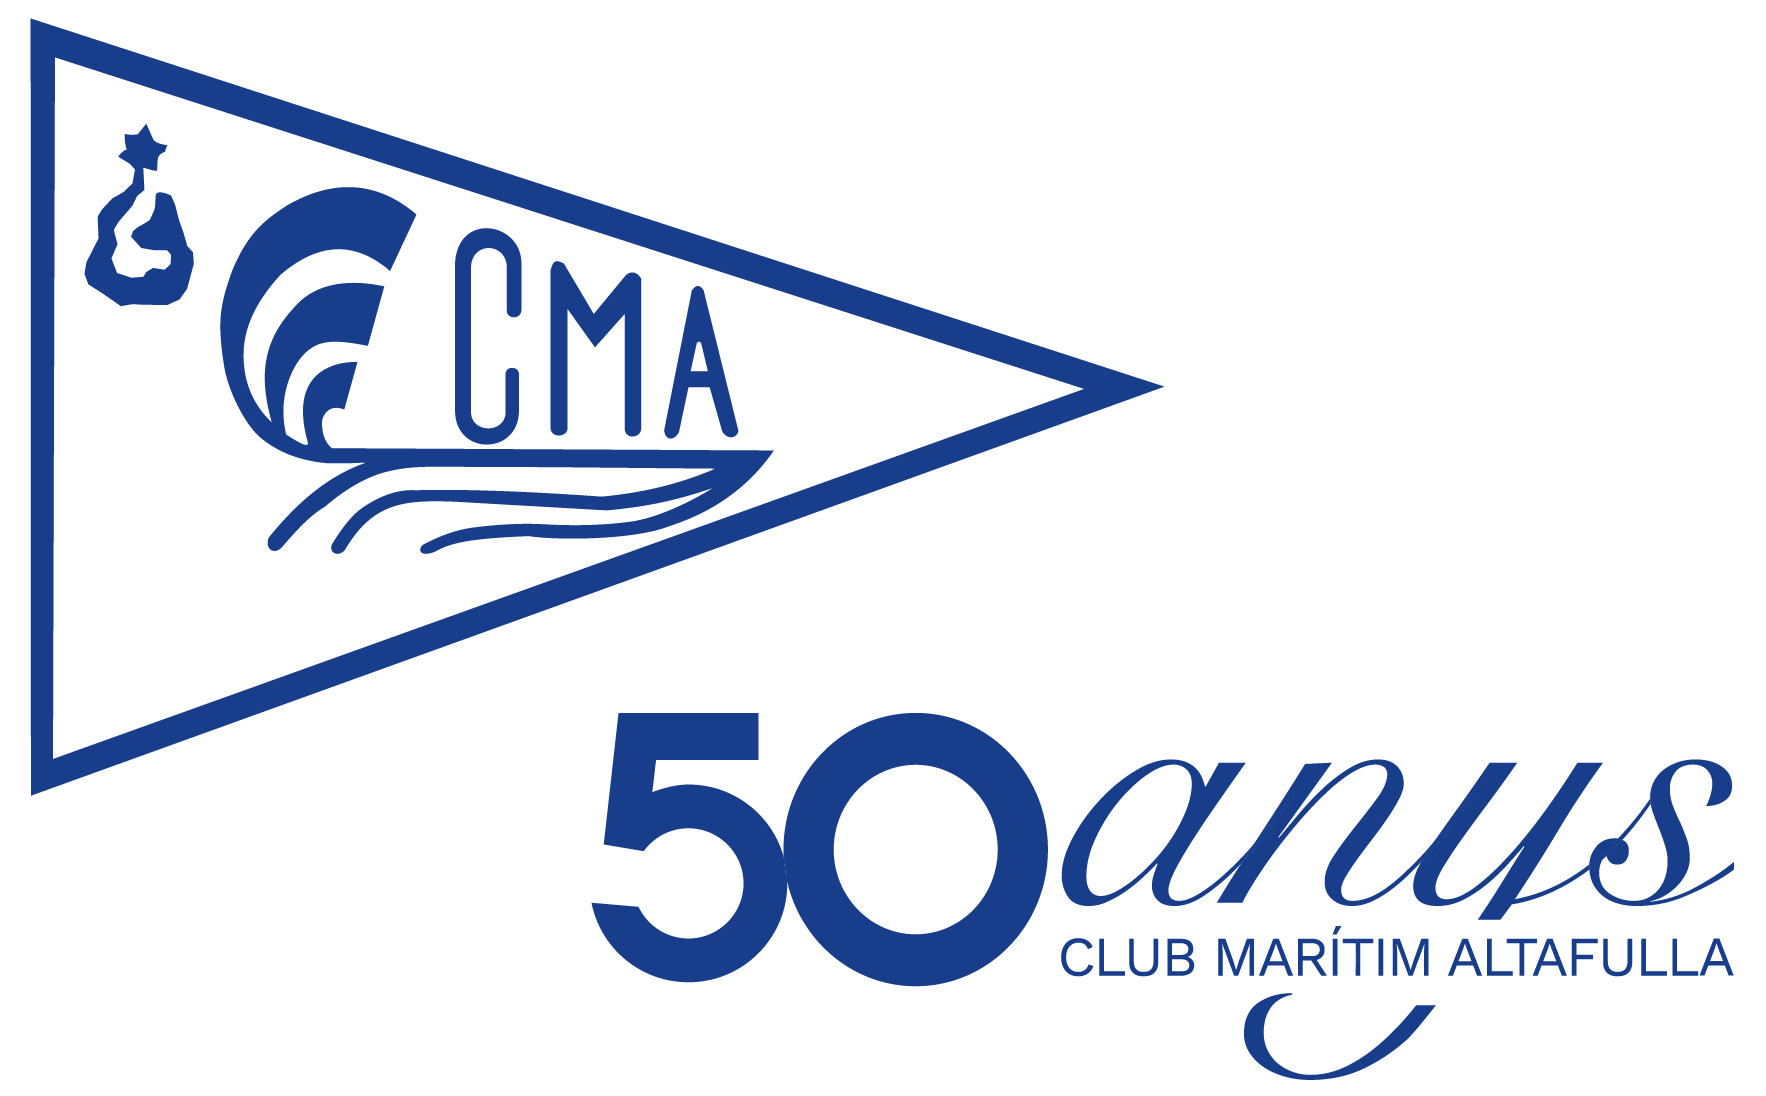 Club Marítim Altafulla